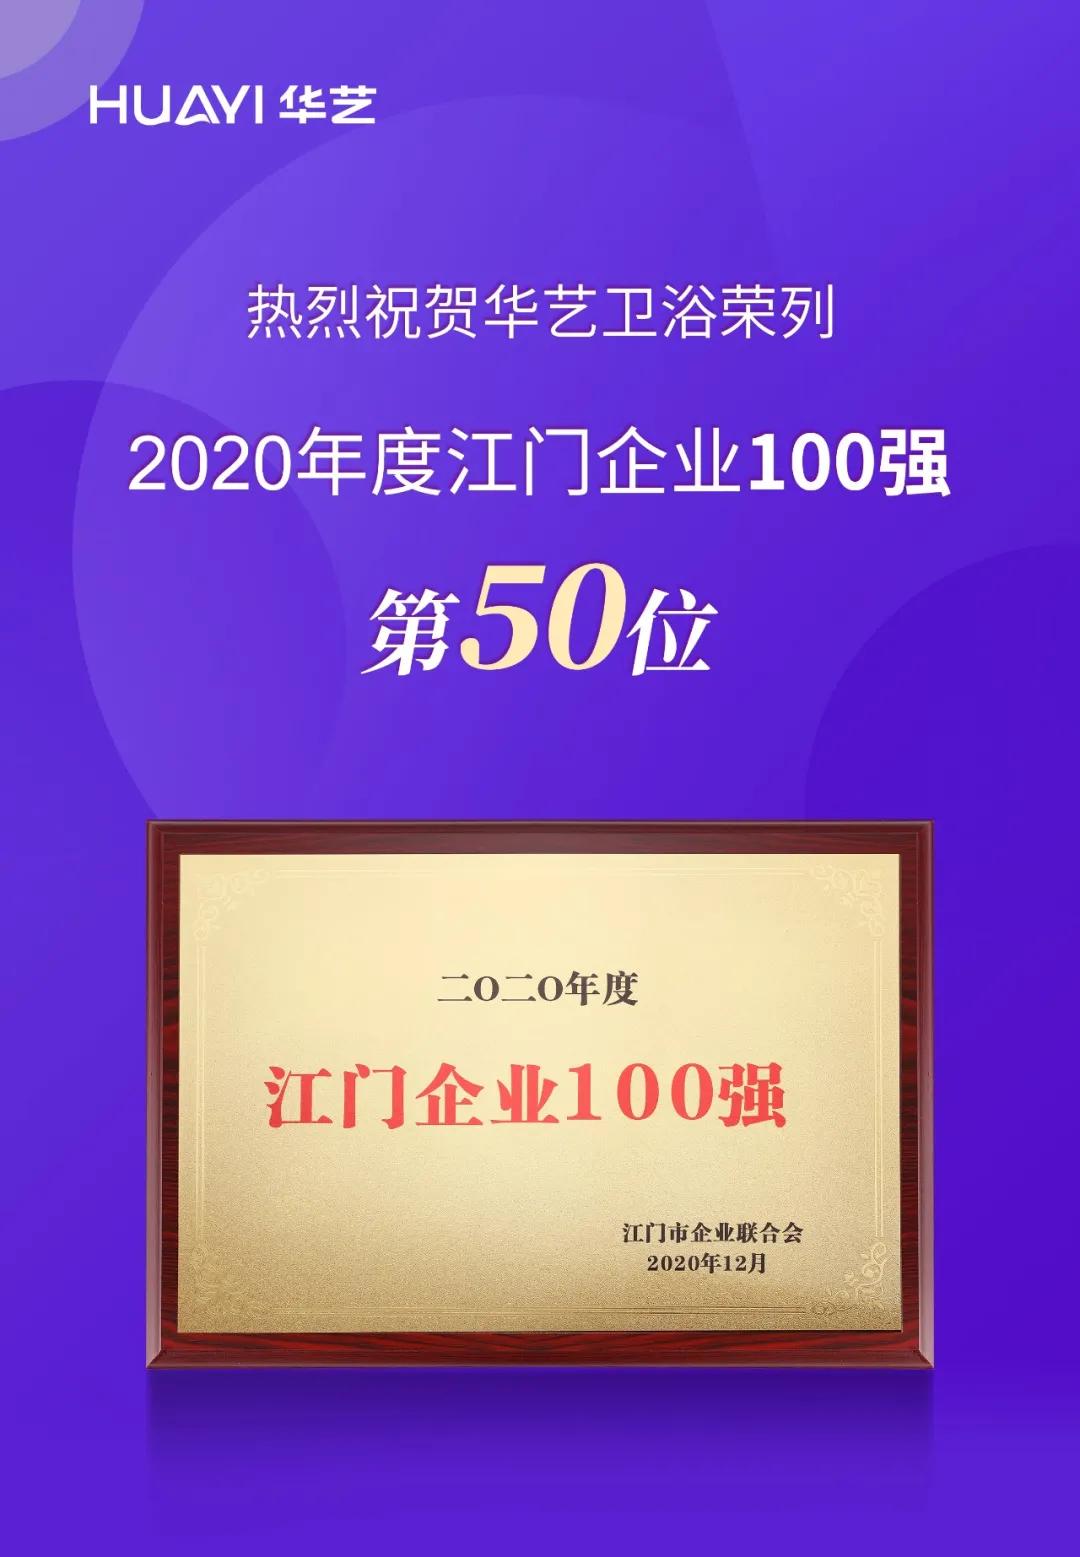 2020年度江门企业100强榜单揭晓，华艺卫浴荣列第50位